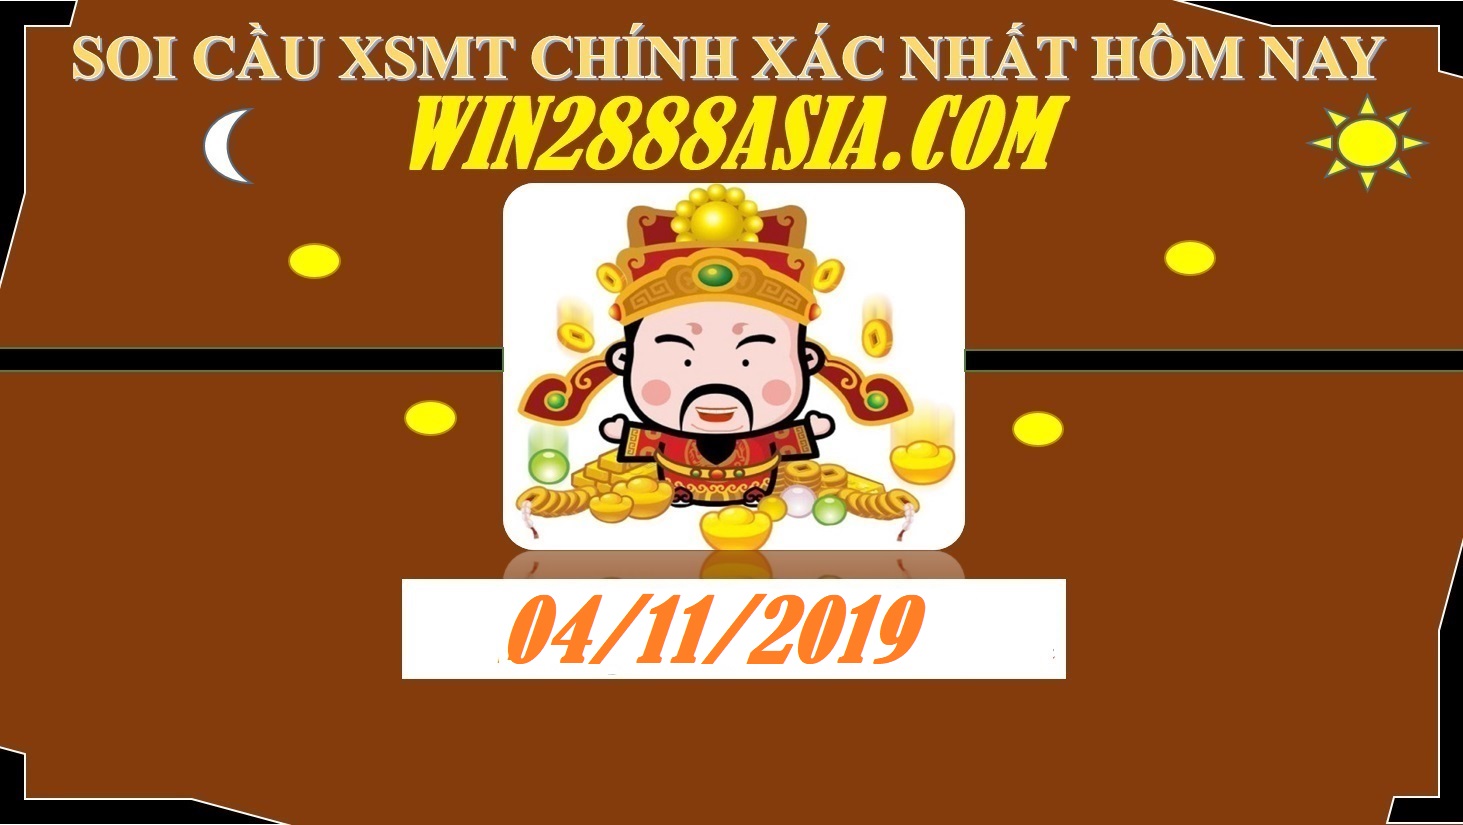 Soi cầu XSMT 4-11-2019 Win2888